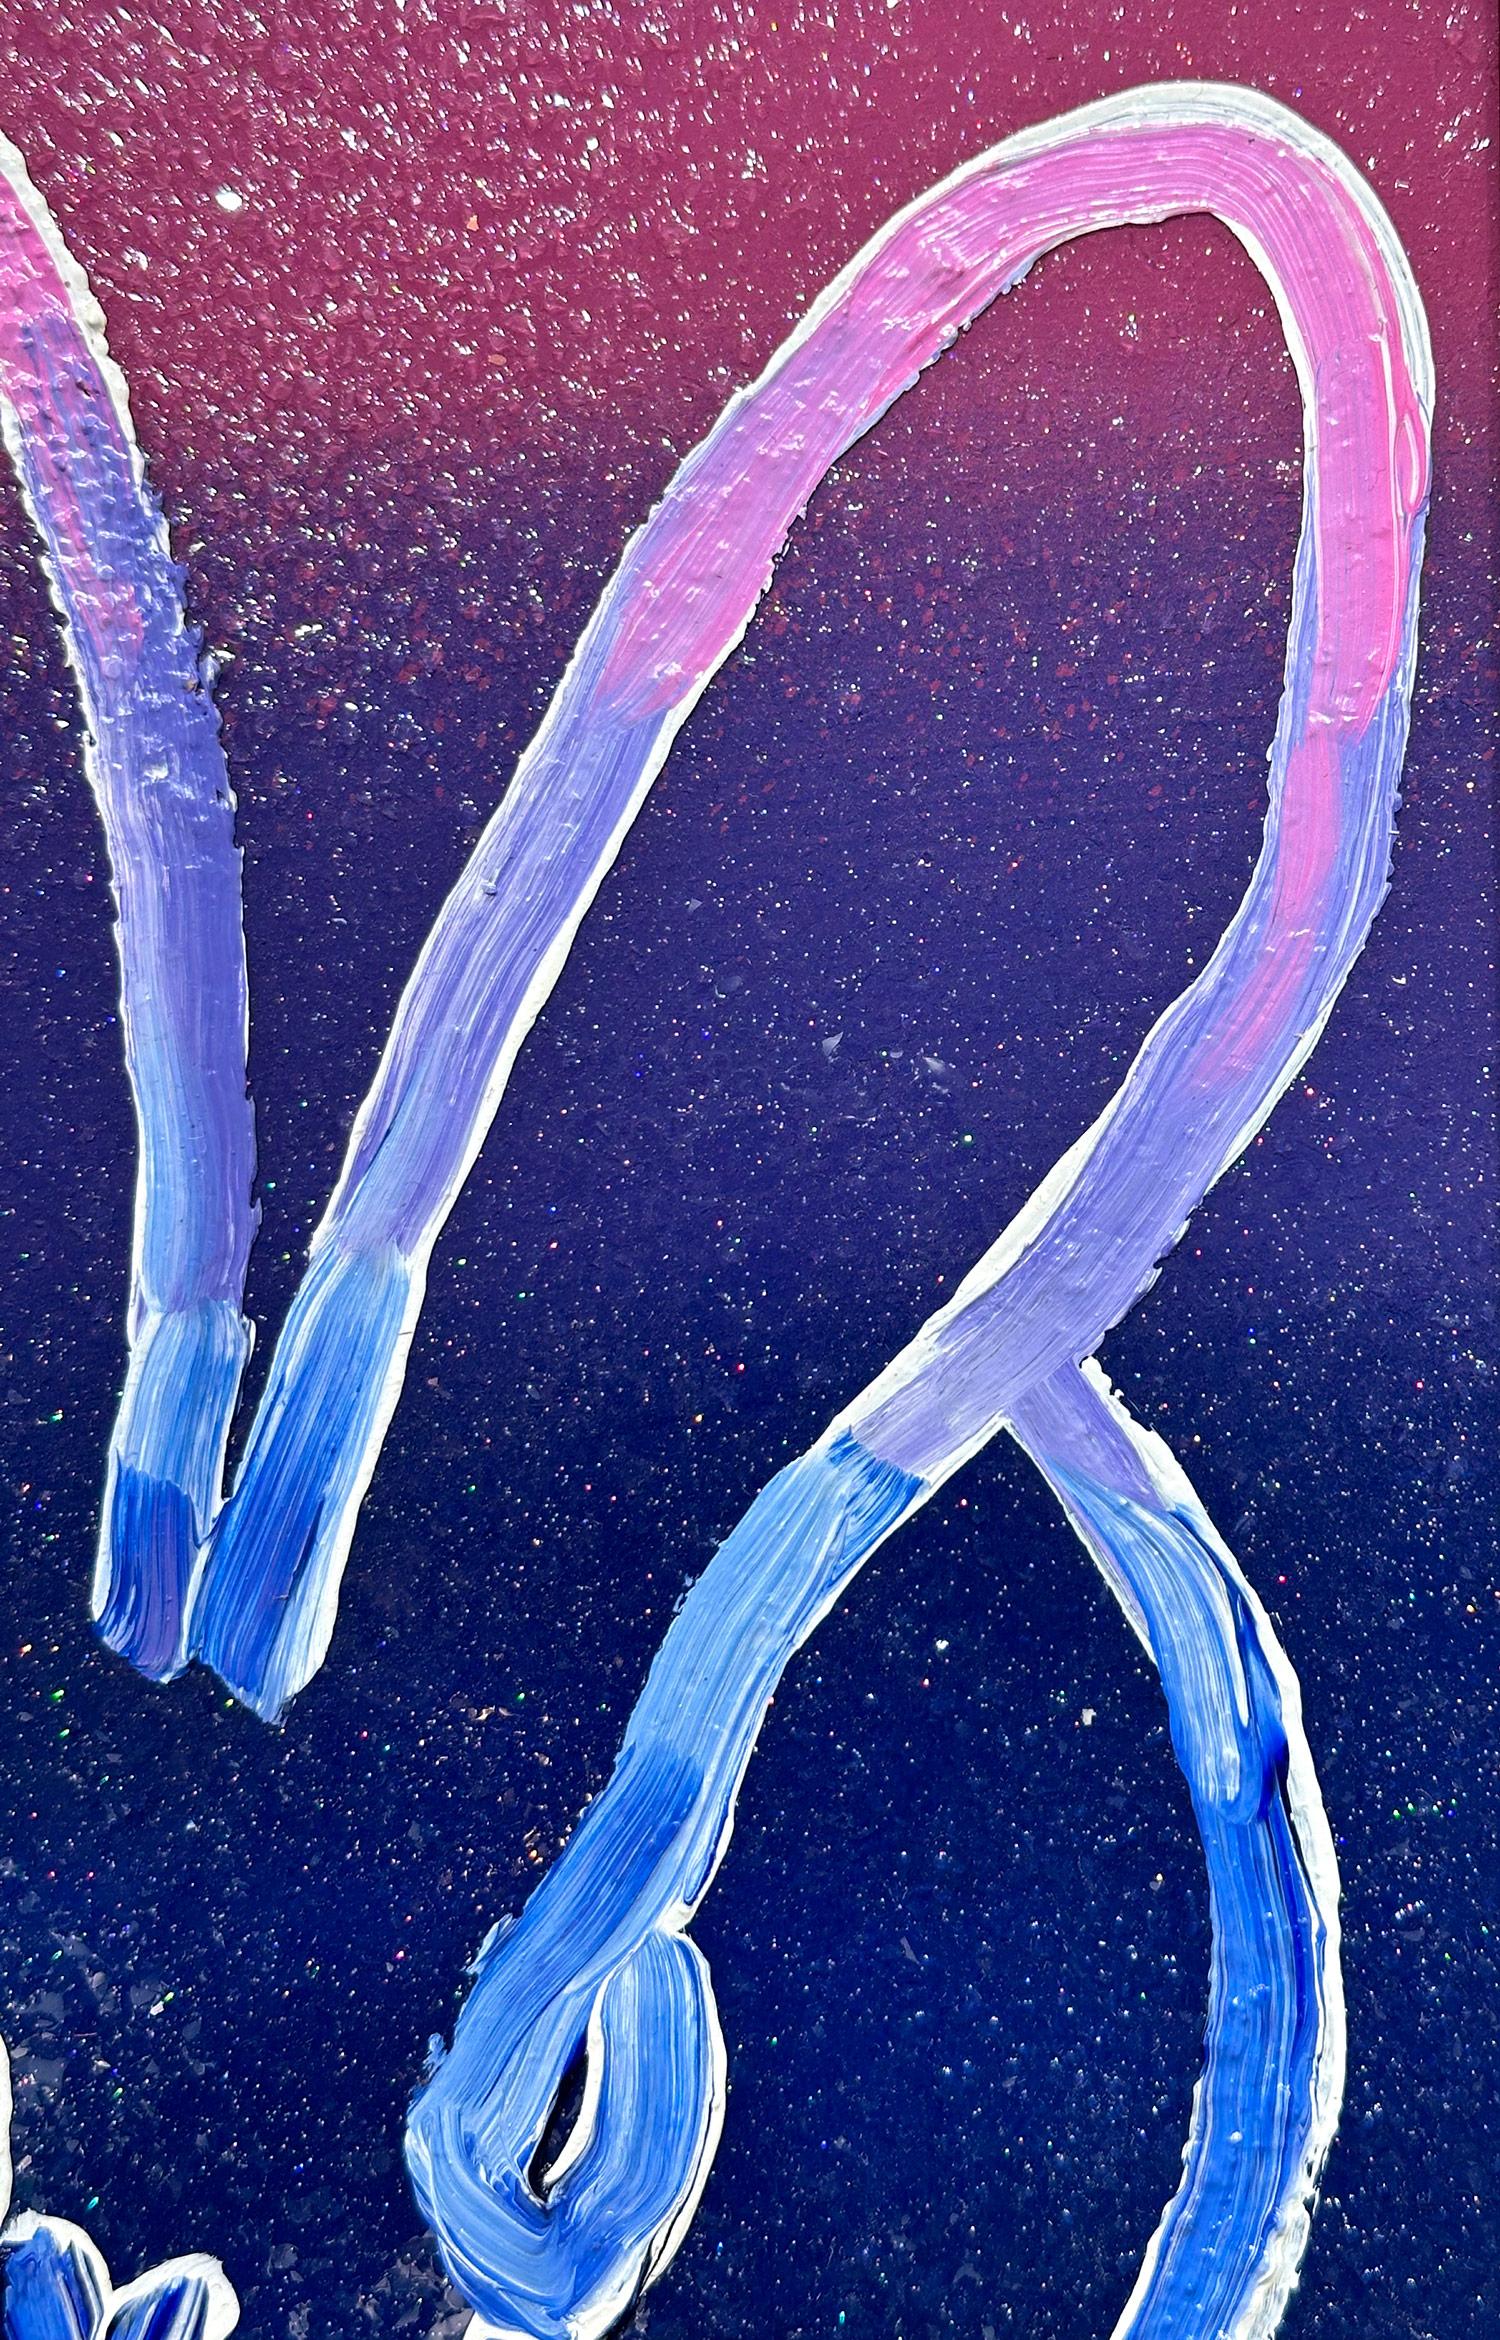 Eine wunderbare Komposition eines der ikonischsten Themen von Slonem, nämlich Hasen. Diese Arbeit zeigt eine gestische Figur eines mehrfarbigen Häschens auf einem ombre rosa und blauen Hintergrund mit dickem Einsatz von Farbe, Harz und Diamantstaub.